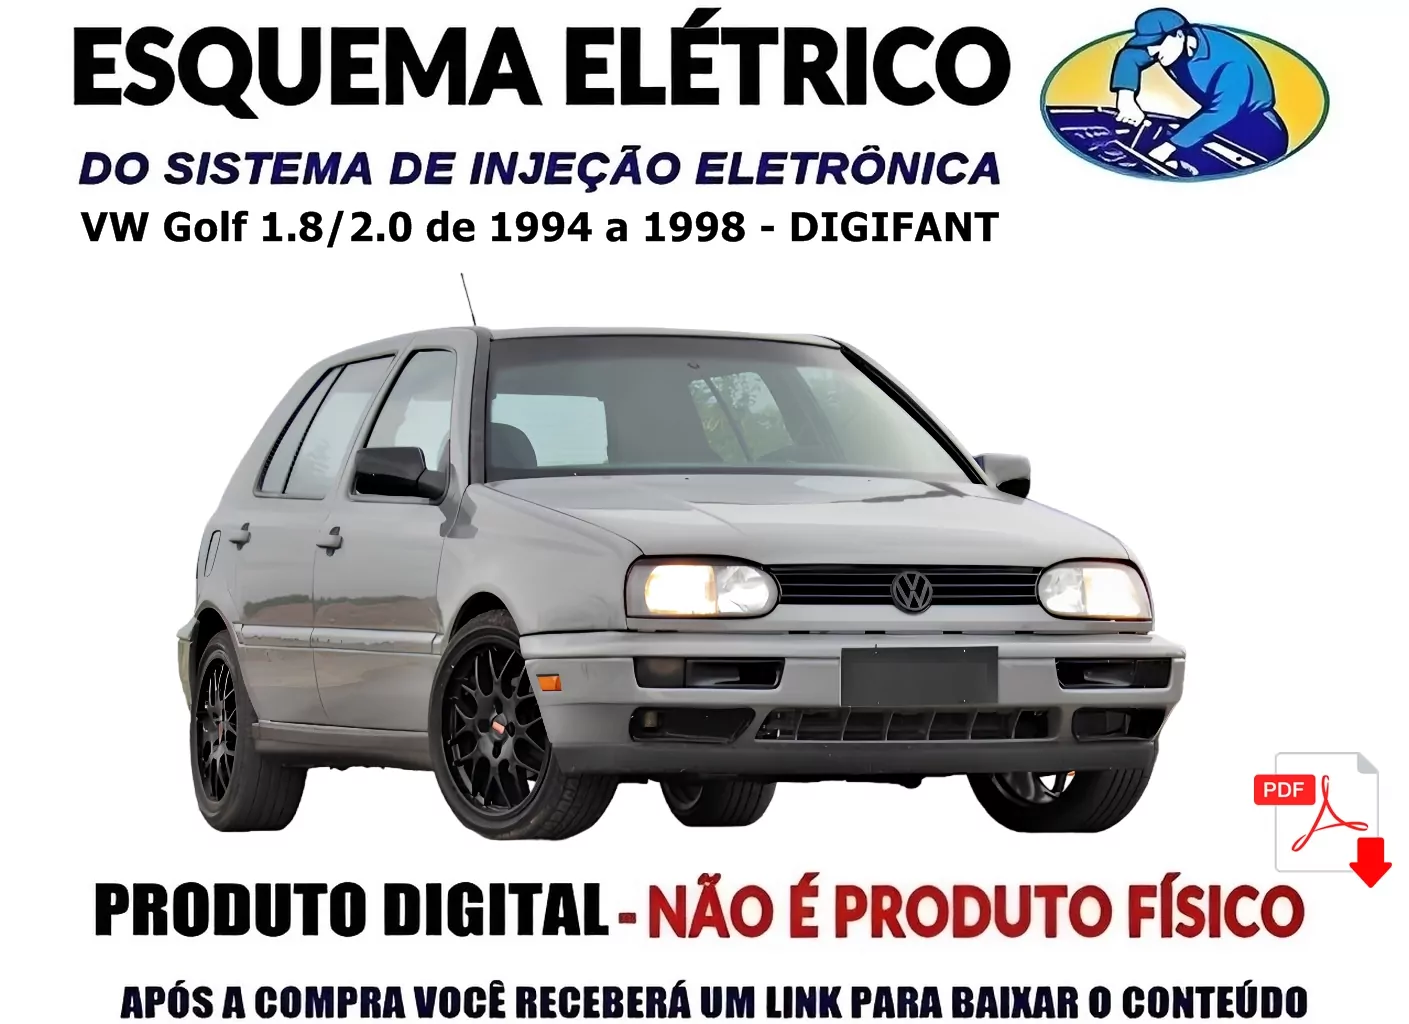 159134Esquema Elétrico Completo Jetta 2.0 de 2011 a 2015 Inclui Injeção (Em Inglês)